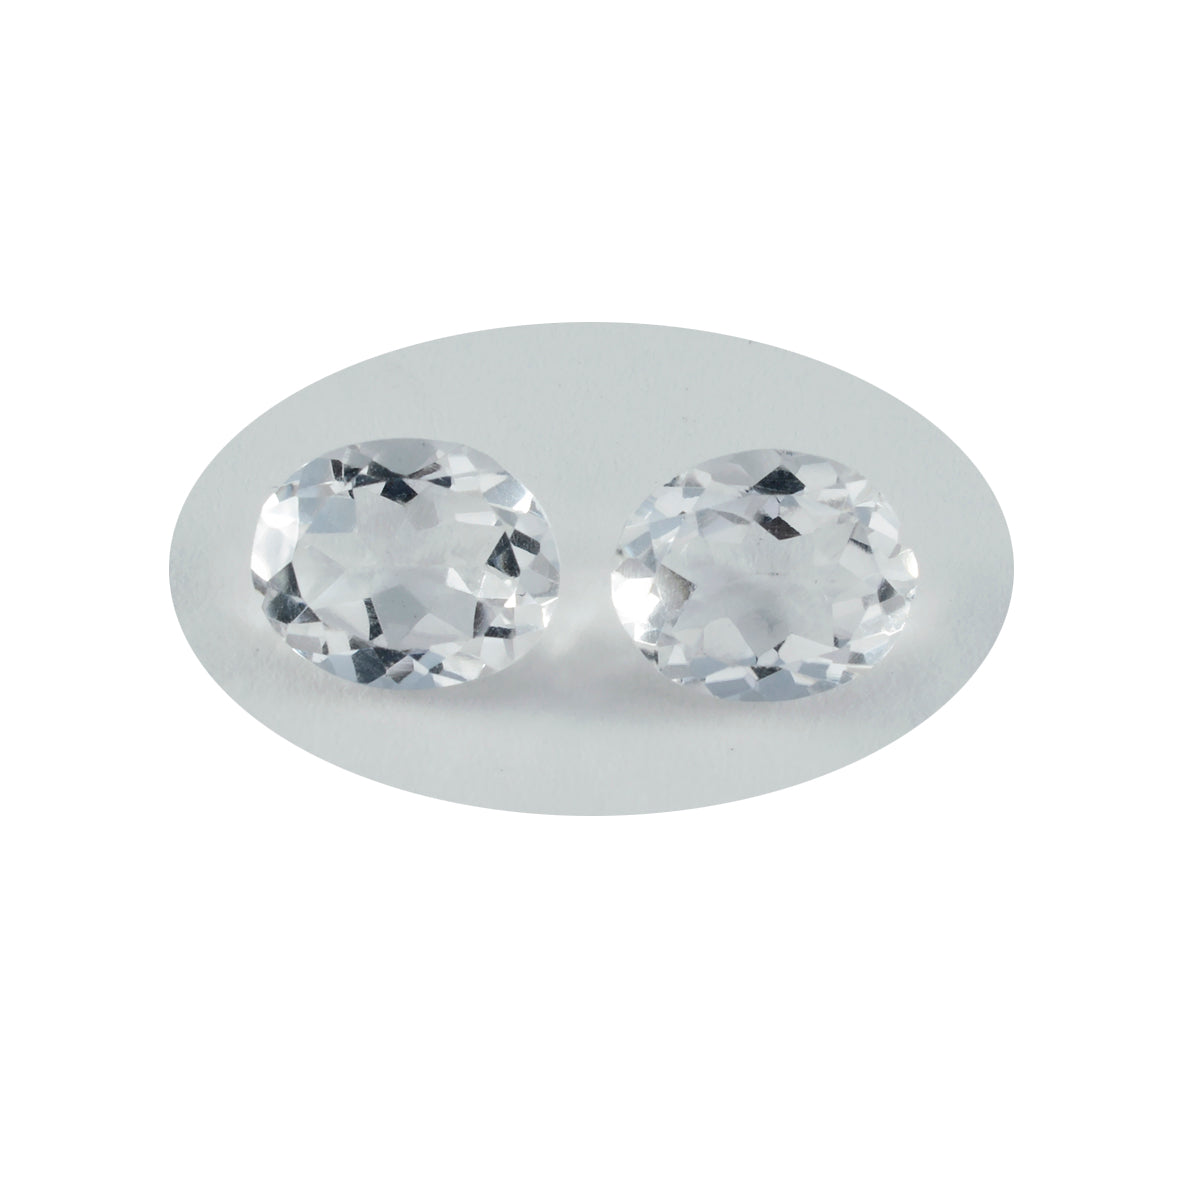 riyogems 1шт белый кристалл кварца ограненный 9x11 мм овальная форма отличное качество россыпь драгоценный камень